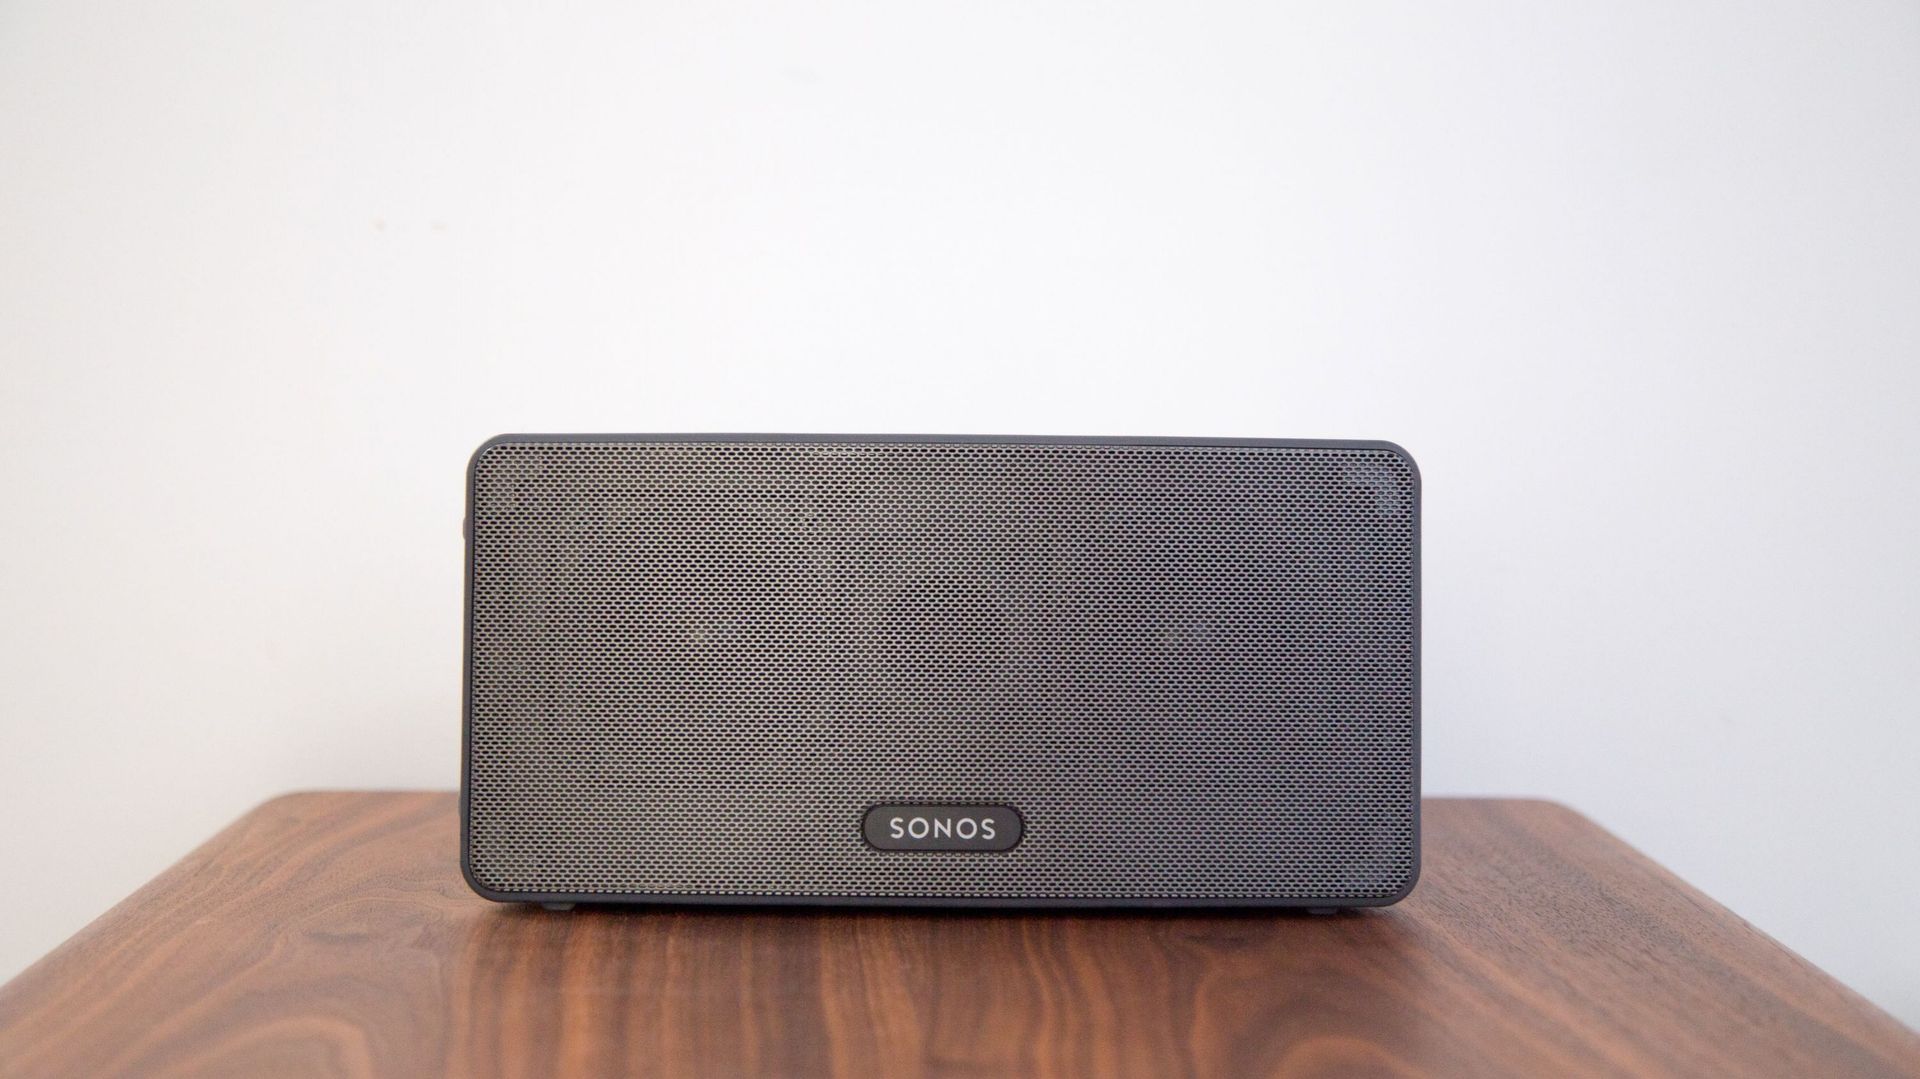 Sonos porte plainte contre Google et l'accuse d'avoir violé 5 brevets